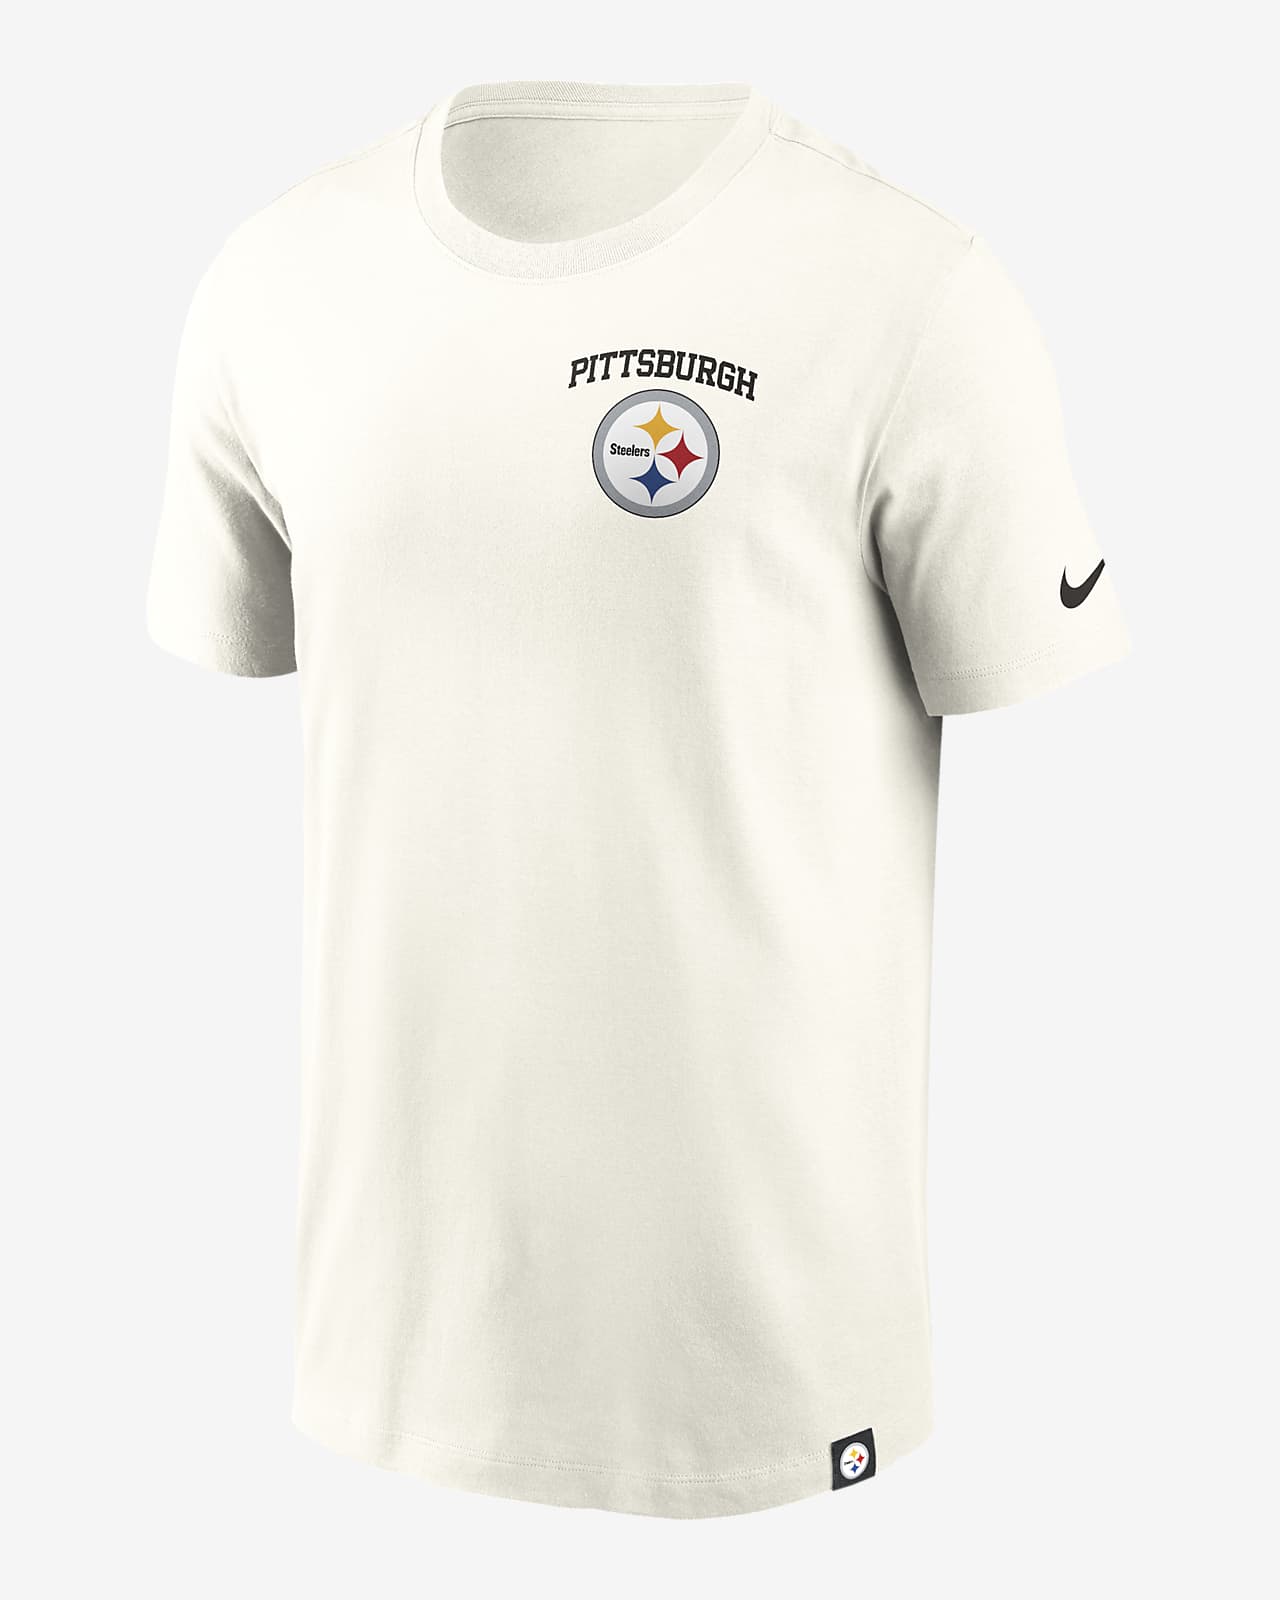 Playera Nike de la NFL para hombre Pittsburgh Steelers Blitz Essential